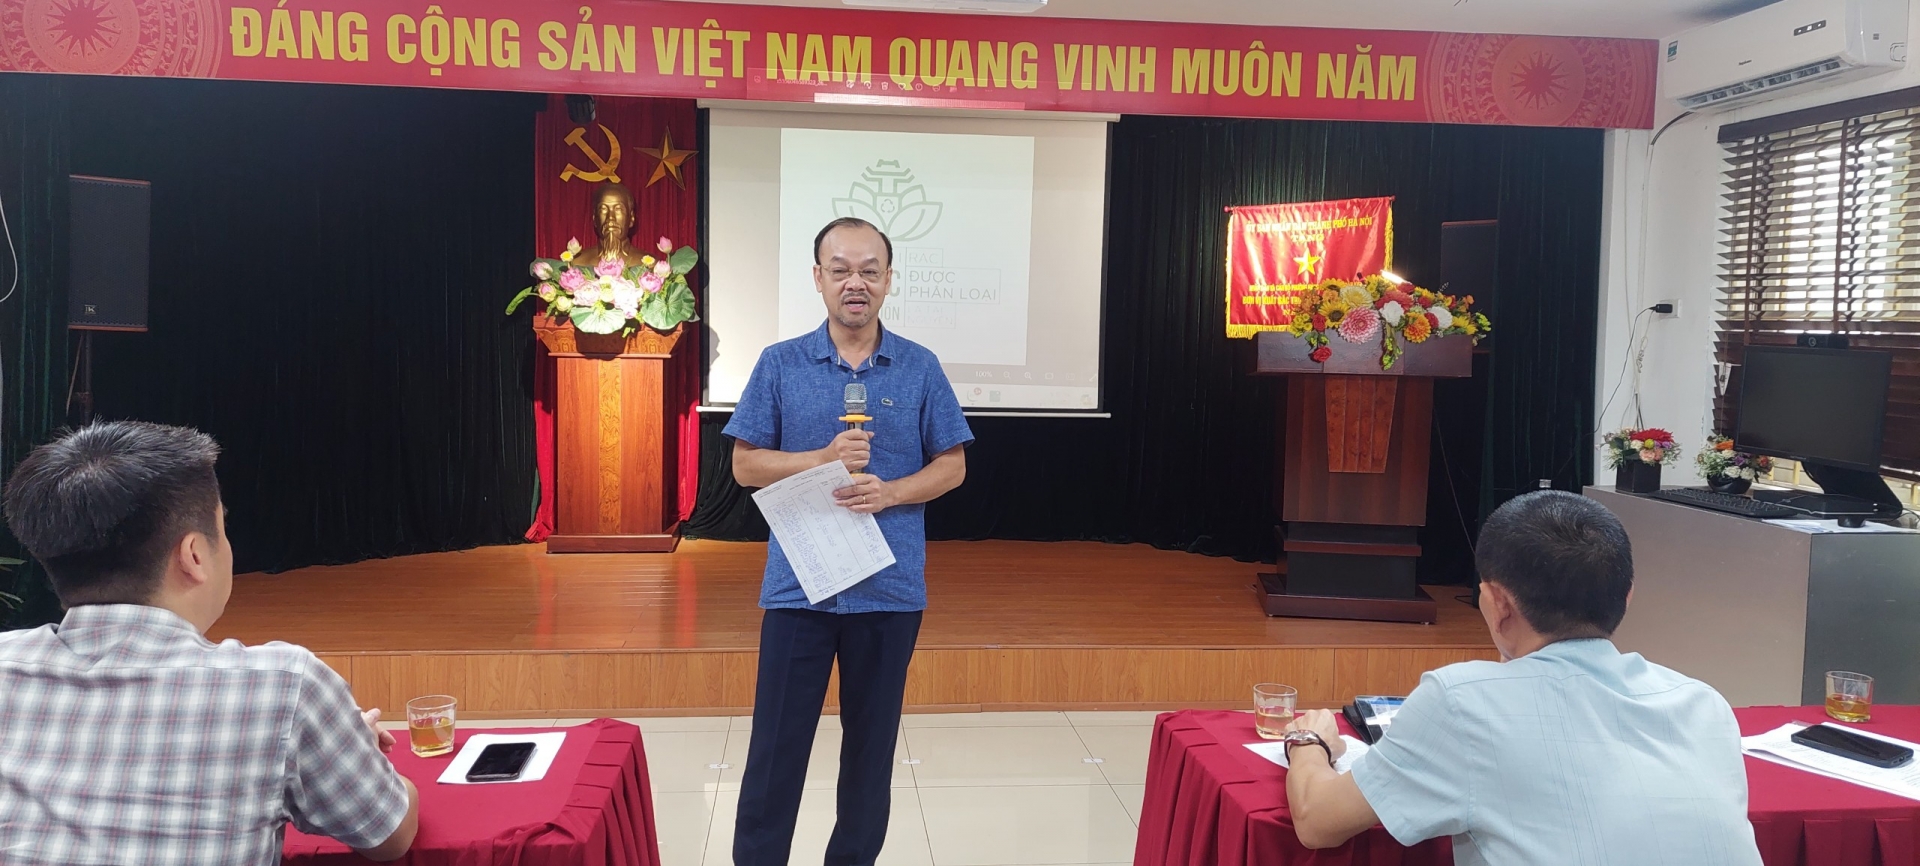 Ông Nguyễn Hữu Tiến - Chủ tịch Hội đồng thành viên URENCO phát biểu tại Hội nghị